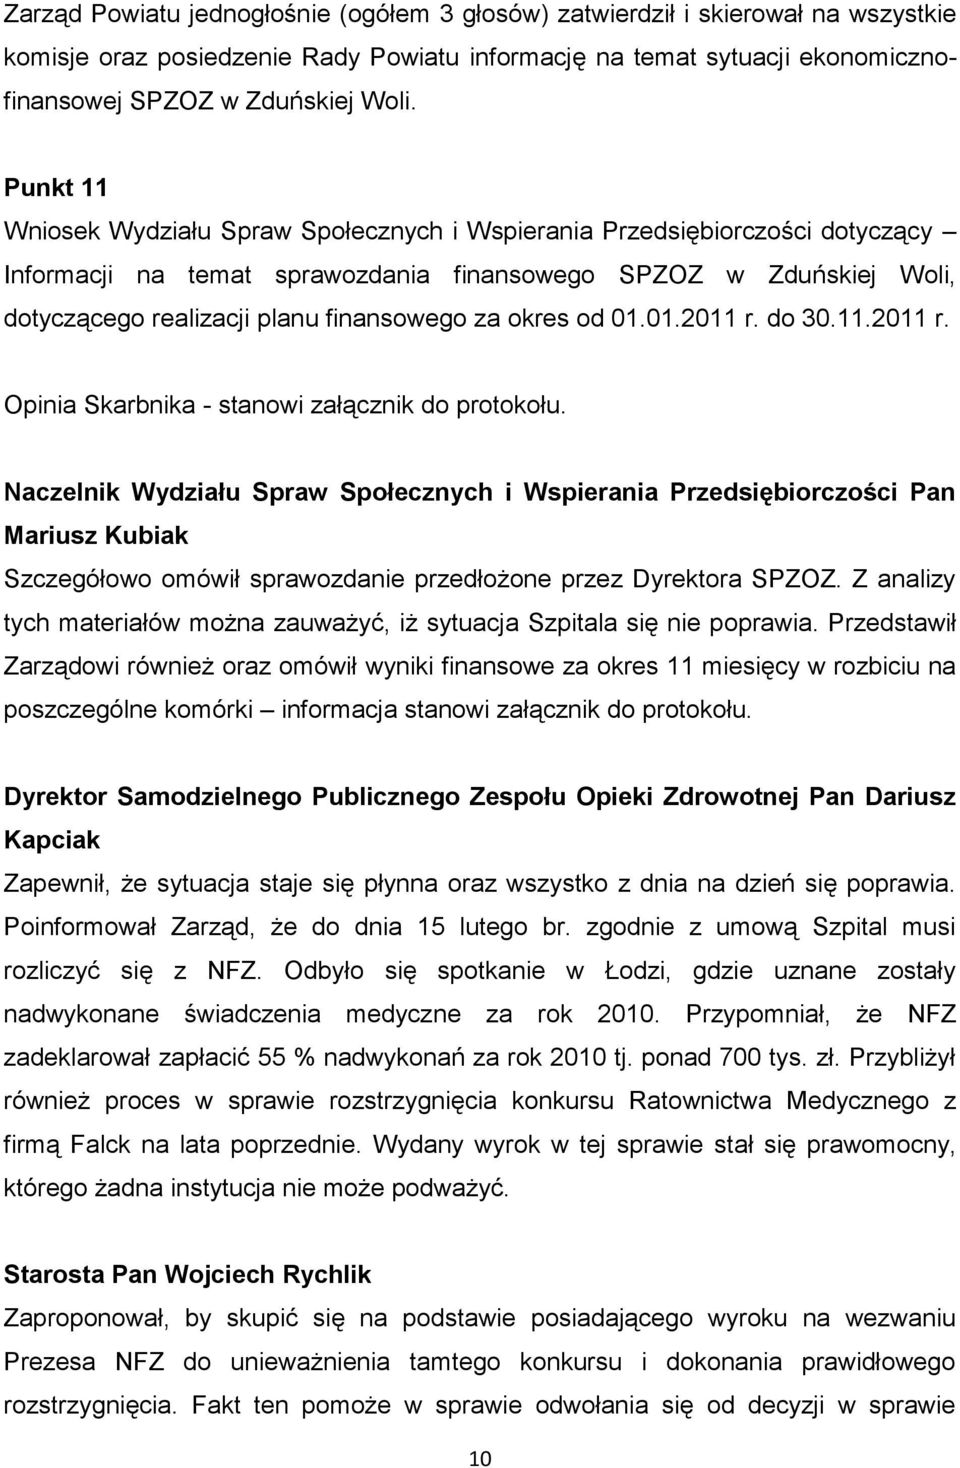 okres od 01.01.2011 r. do 30.11.2011 r. Opinia Skarbnika - stanowi załącznik do protokołu.